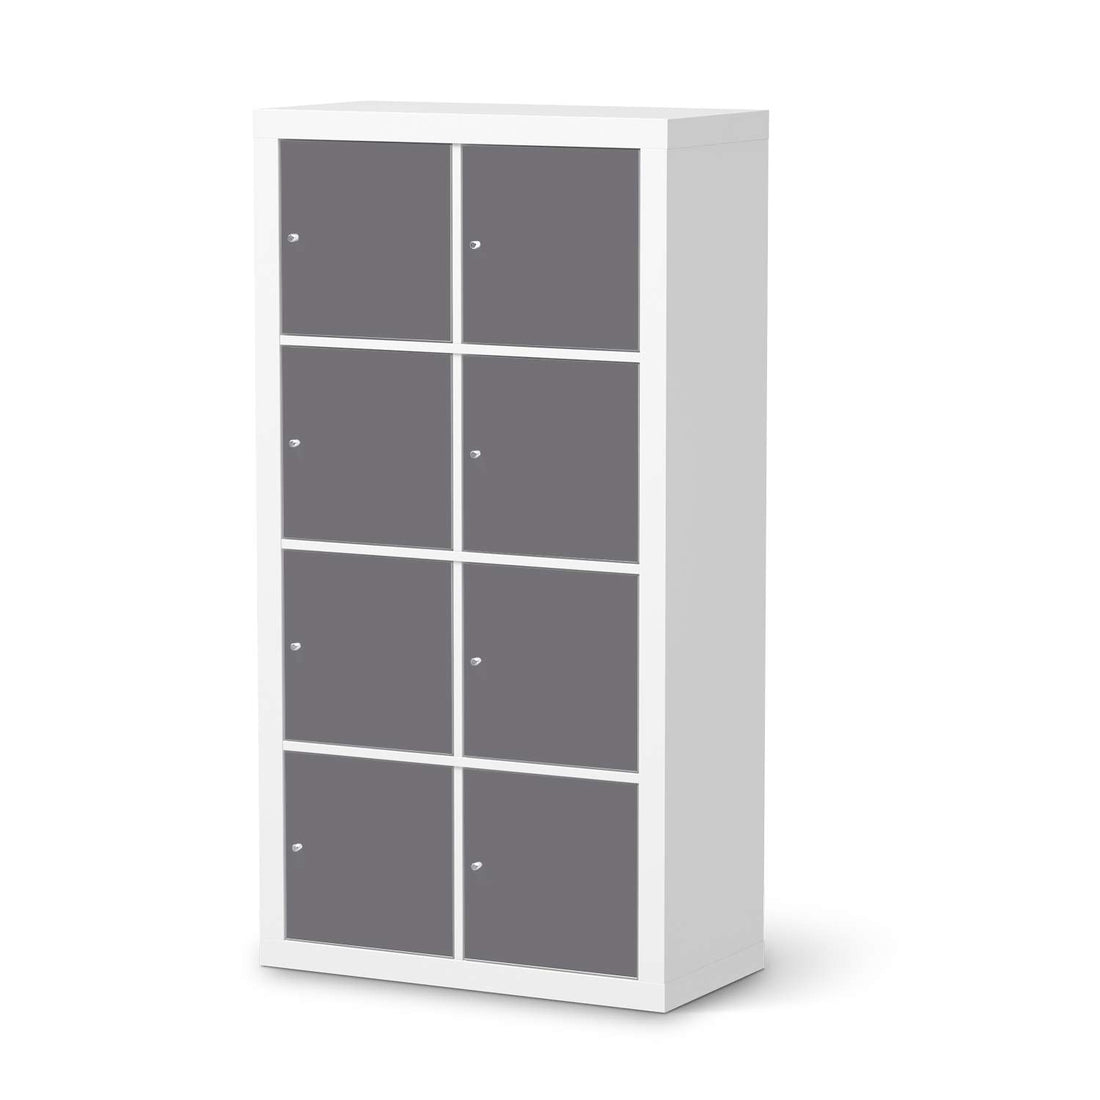 Klebefolie Grau Light - IKEA Expedit Regal 8 Türen  - weiss